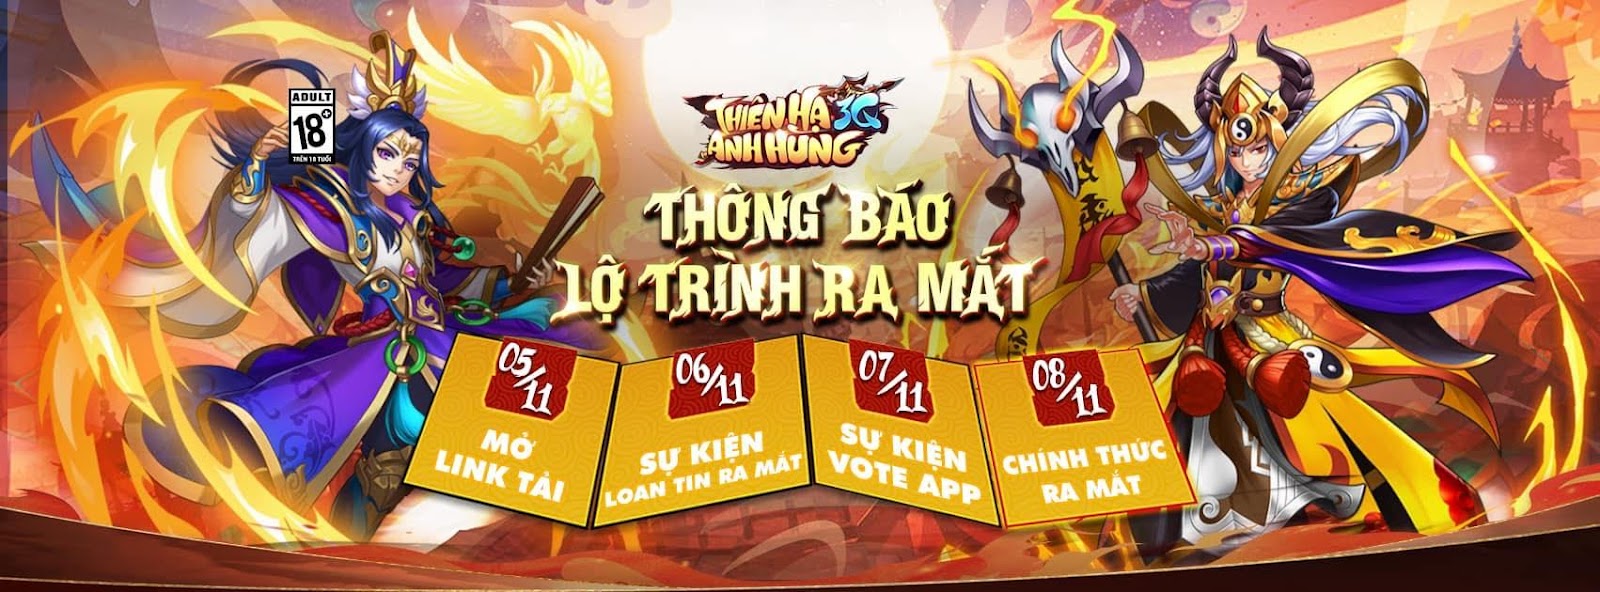 Thiên Hạ Anh Hùng 3Q - Game thẻ tướng 1 chạm hot nhất cuối năm 2022 dành cho người Việt 10